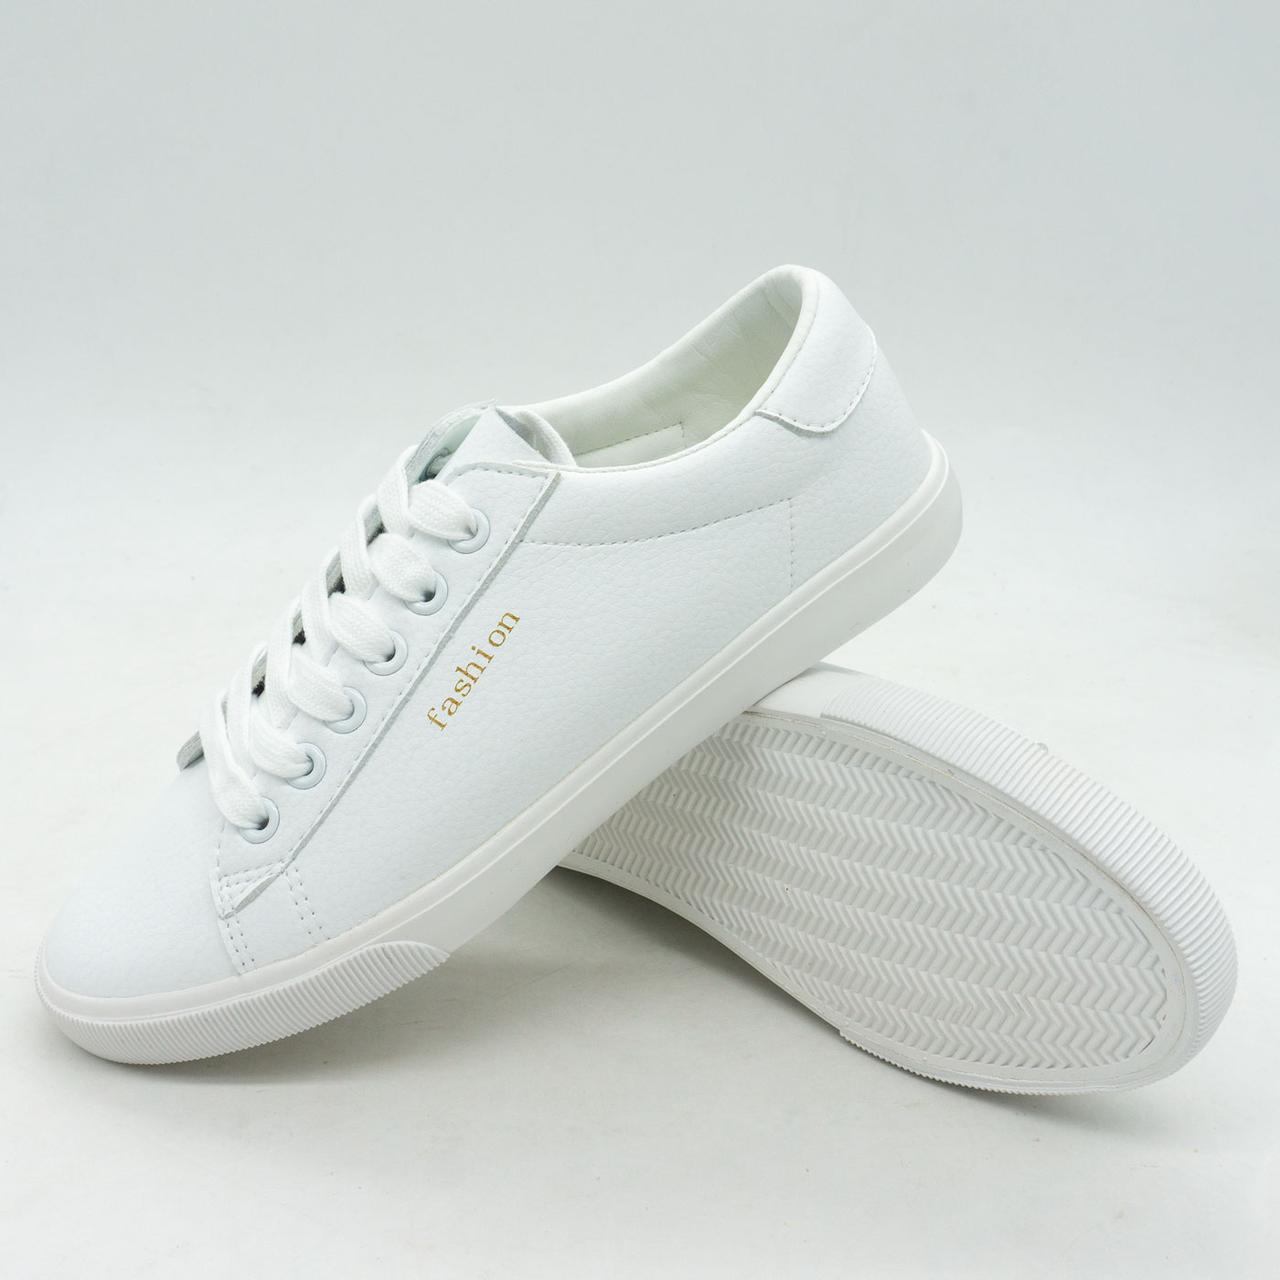 Жіночі кросівки  Sopra YD018 білі 36. Розміри в наявності: 36, 37, 38, 39, 40, 41.